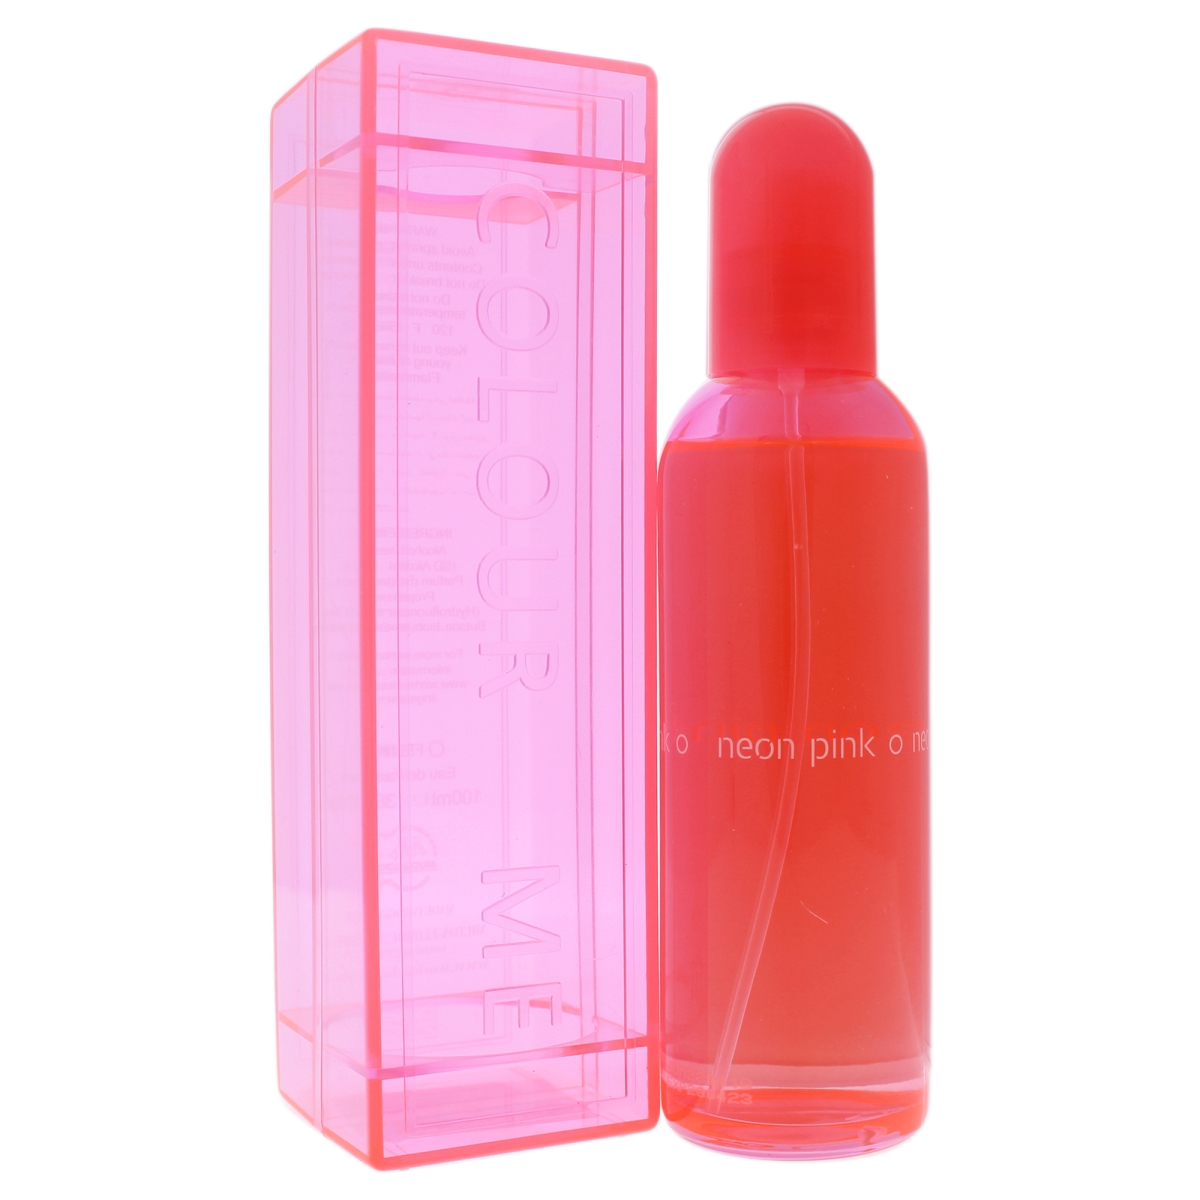 W-9707 Colour Me Neon Pink Edp Spray For Women - 3.4 Oz